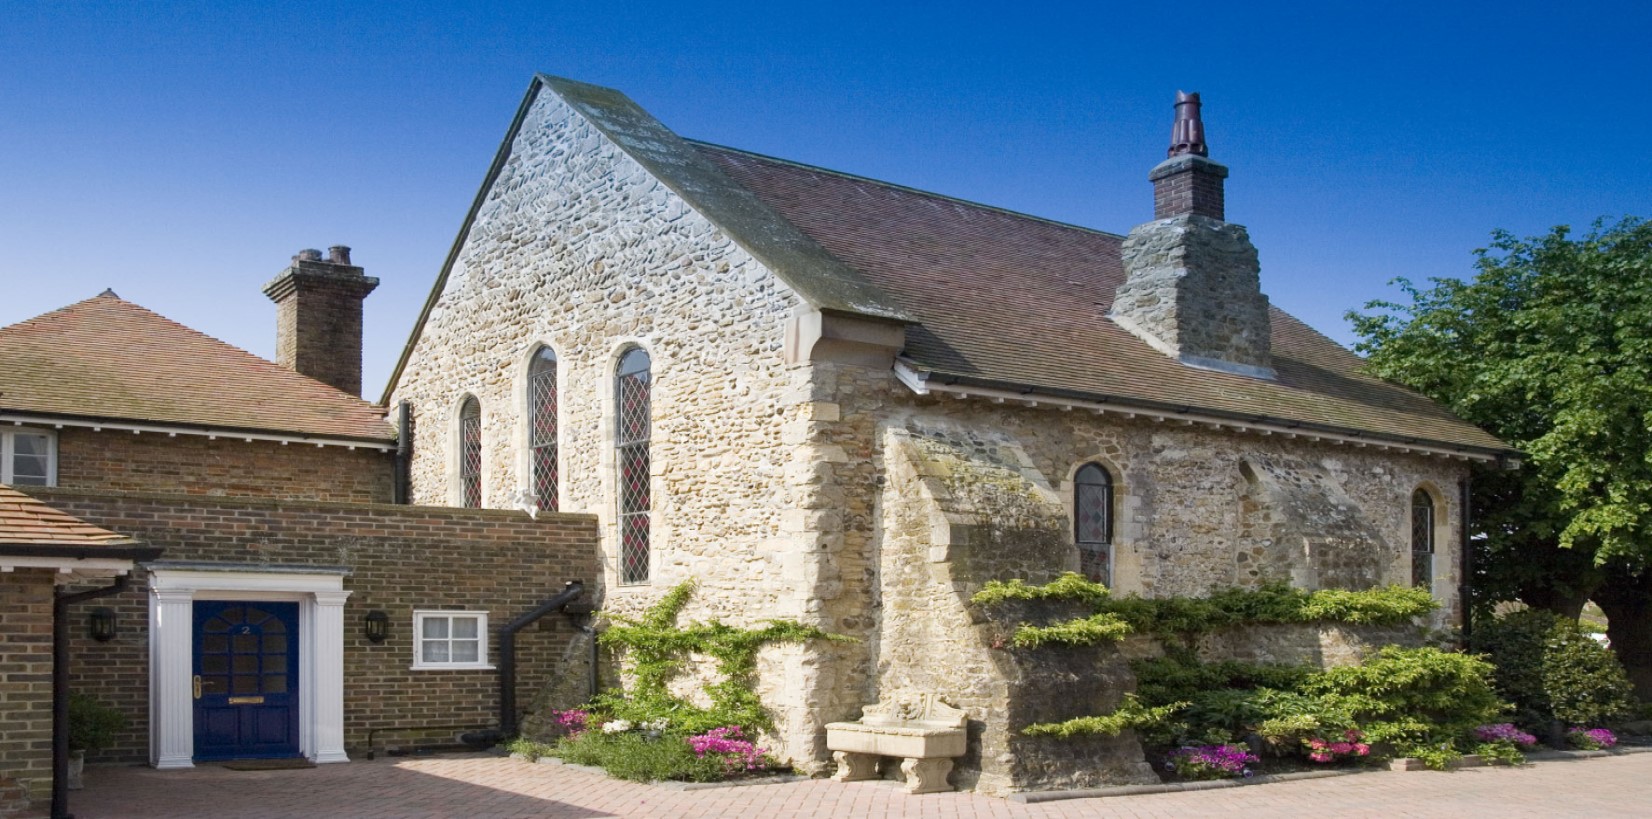 The Chapel at Barton Manor